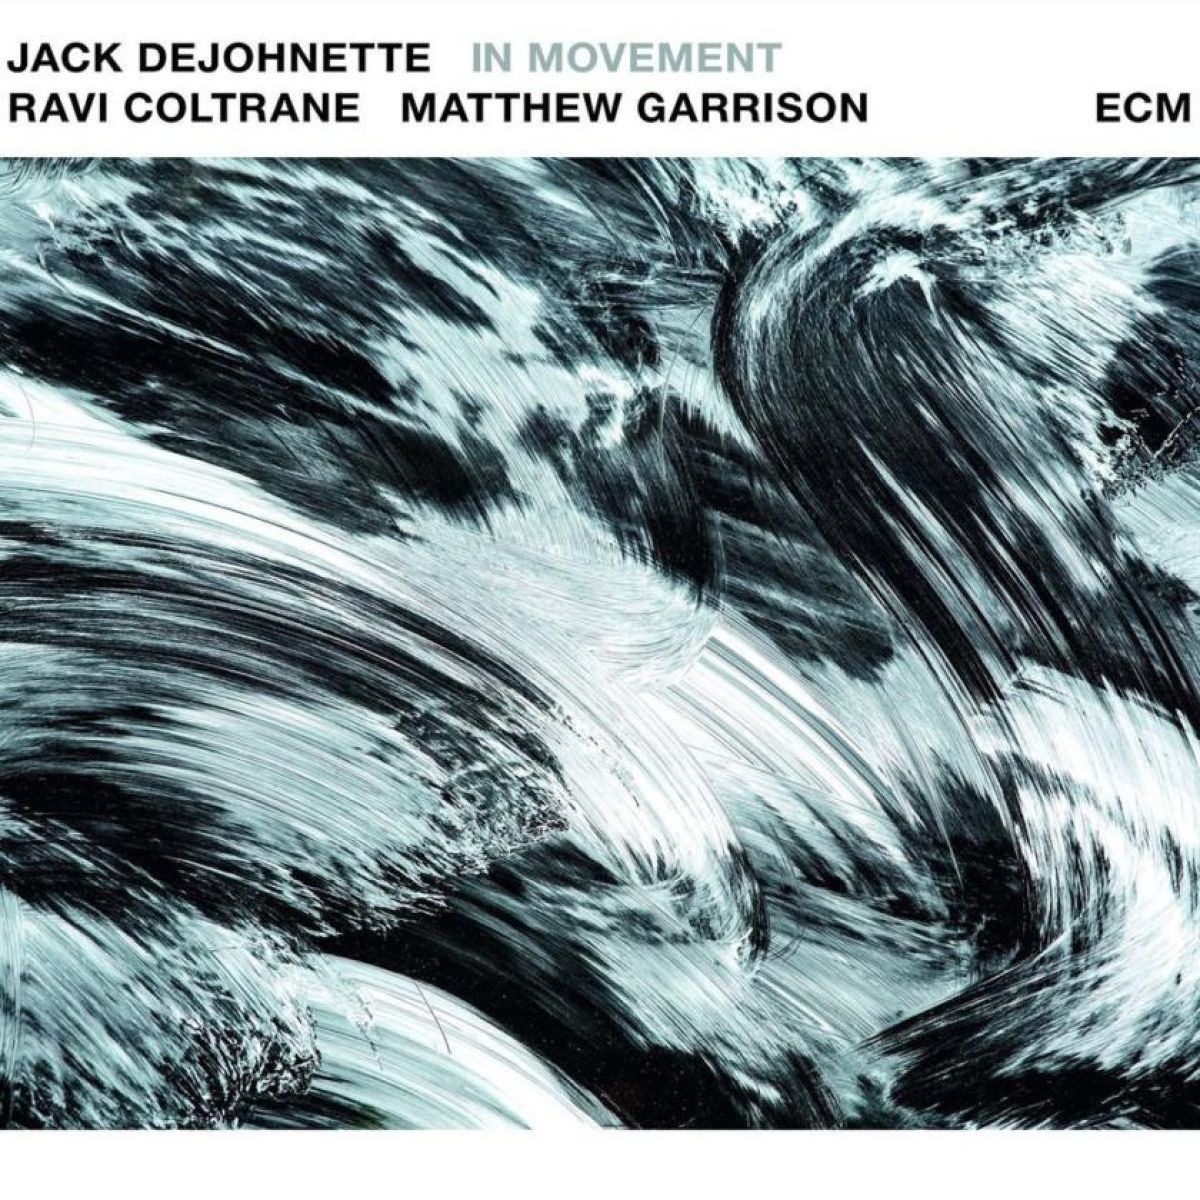 Jack Dejohnette Ravi Coltrane Matthew Garrison In Movement Review